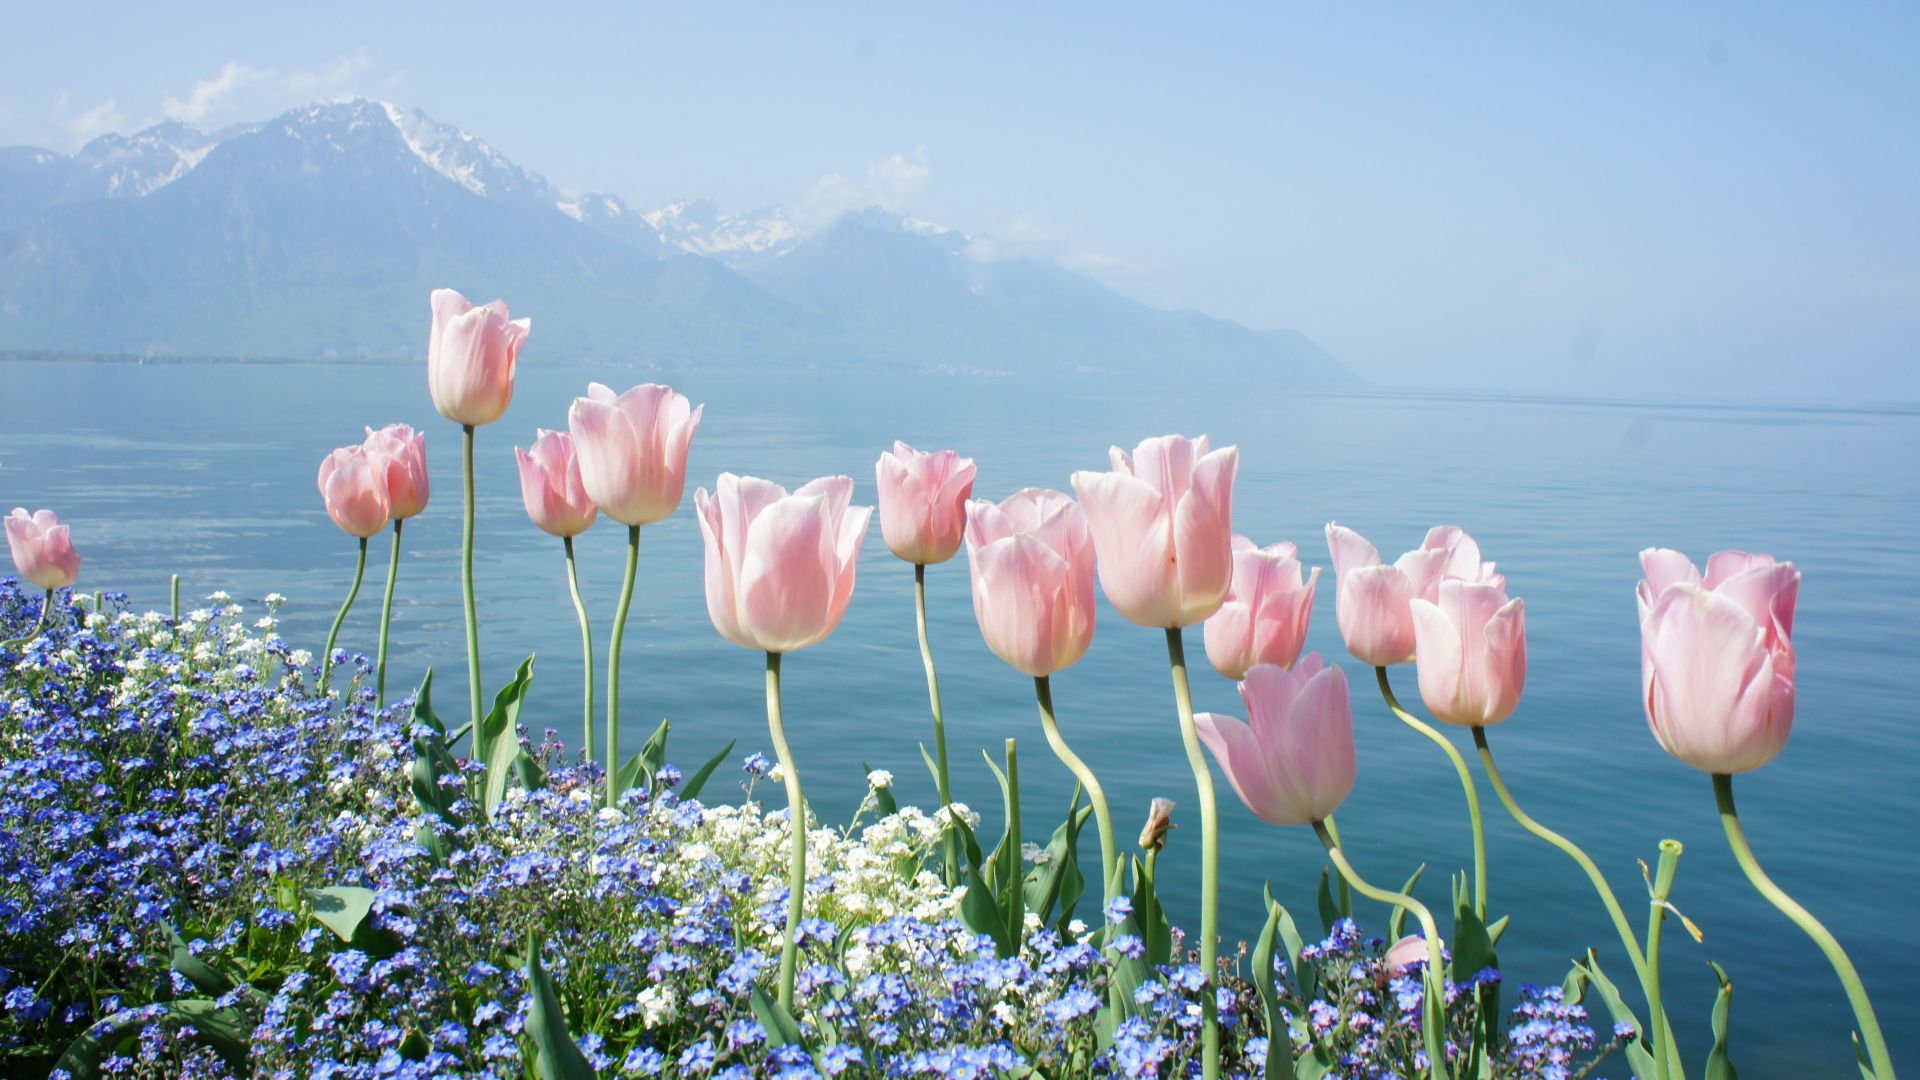 тюльпан, 4k, HD, весенние цветы, горы, tulip, 4k, HD wallpaper, spring flowers, mountains (horizontal)